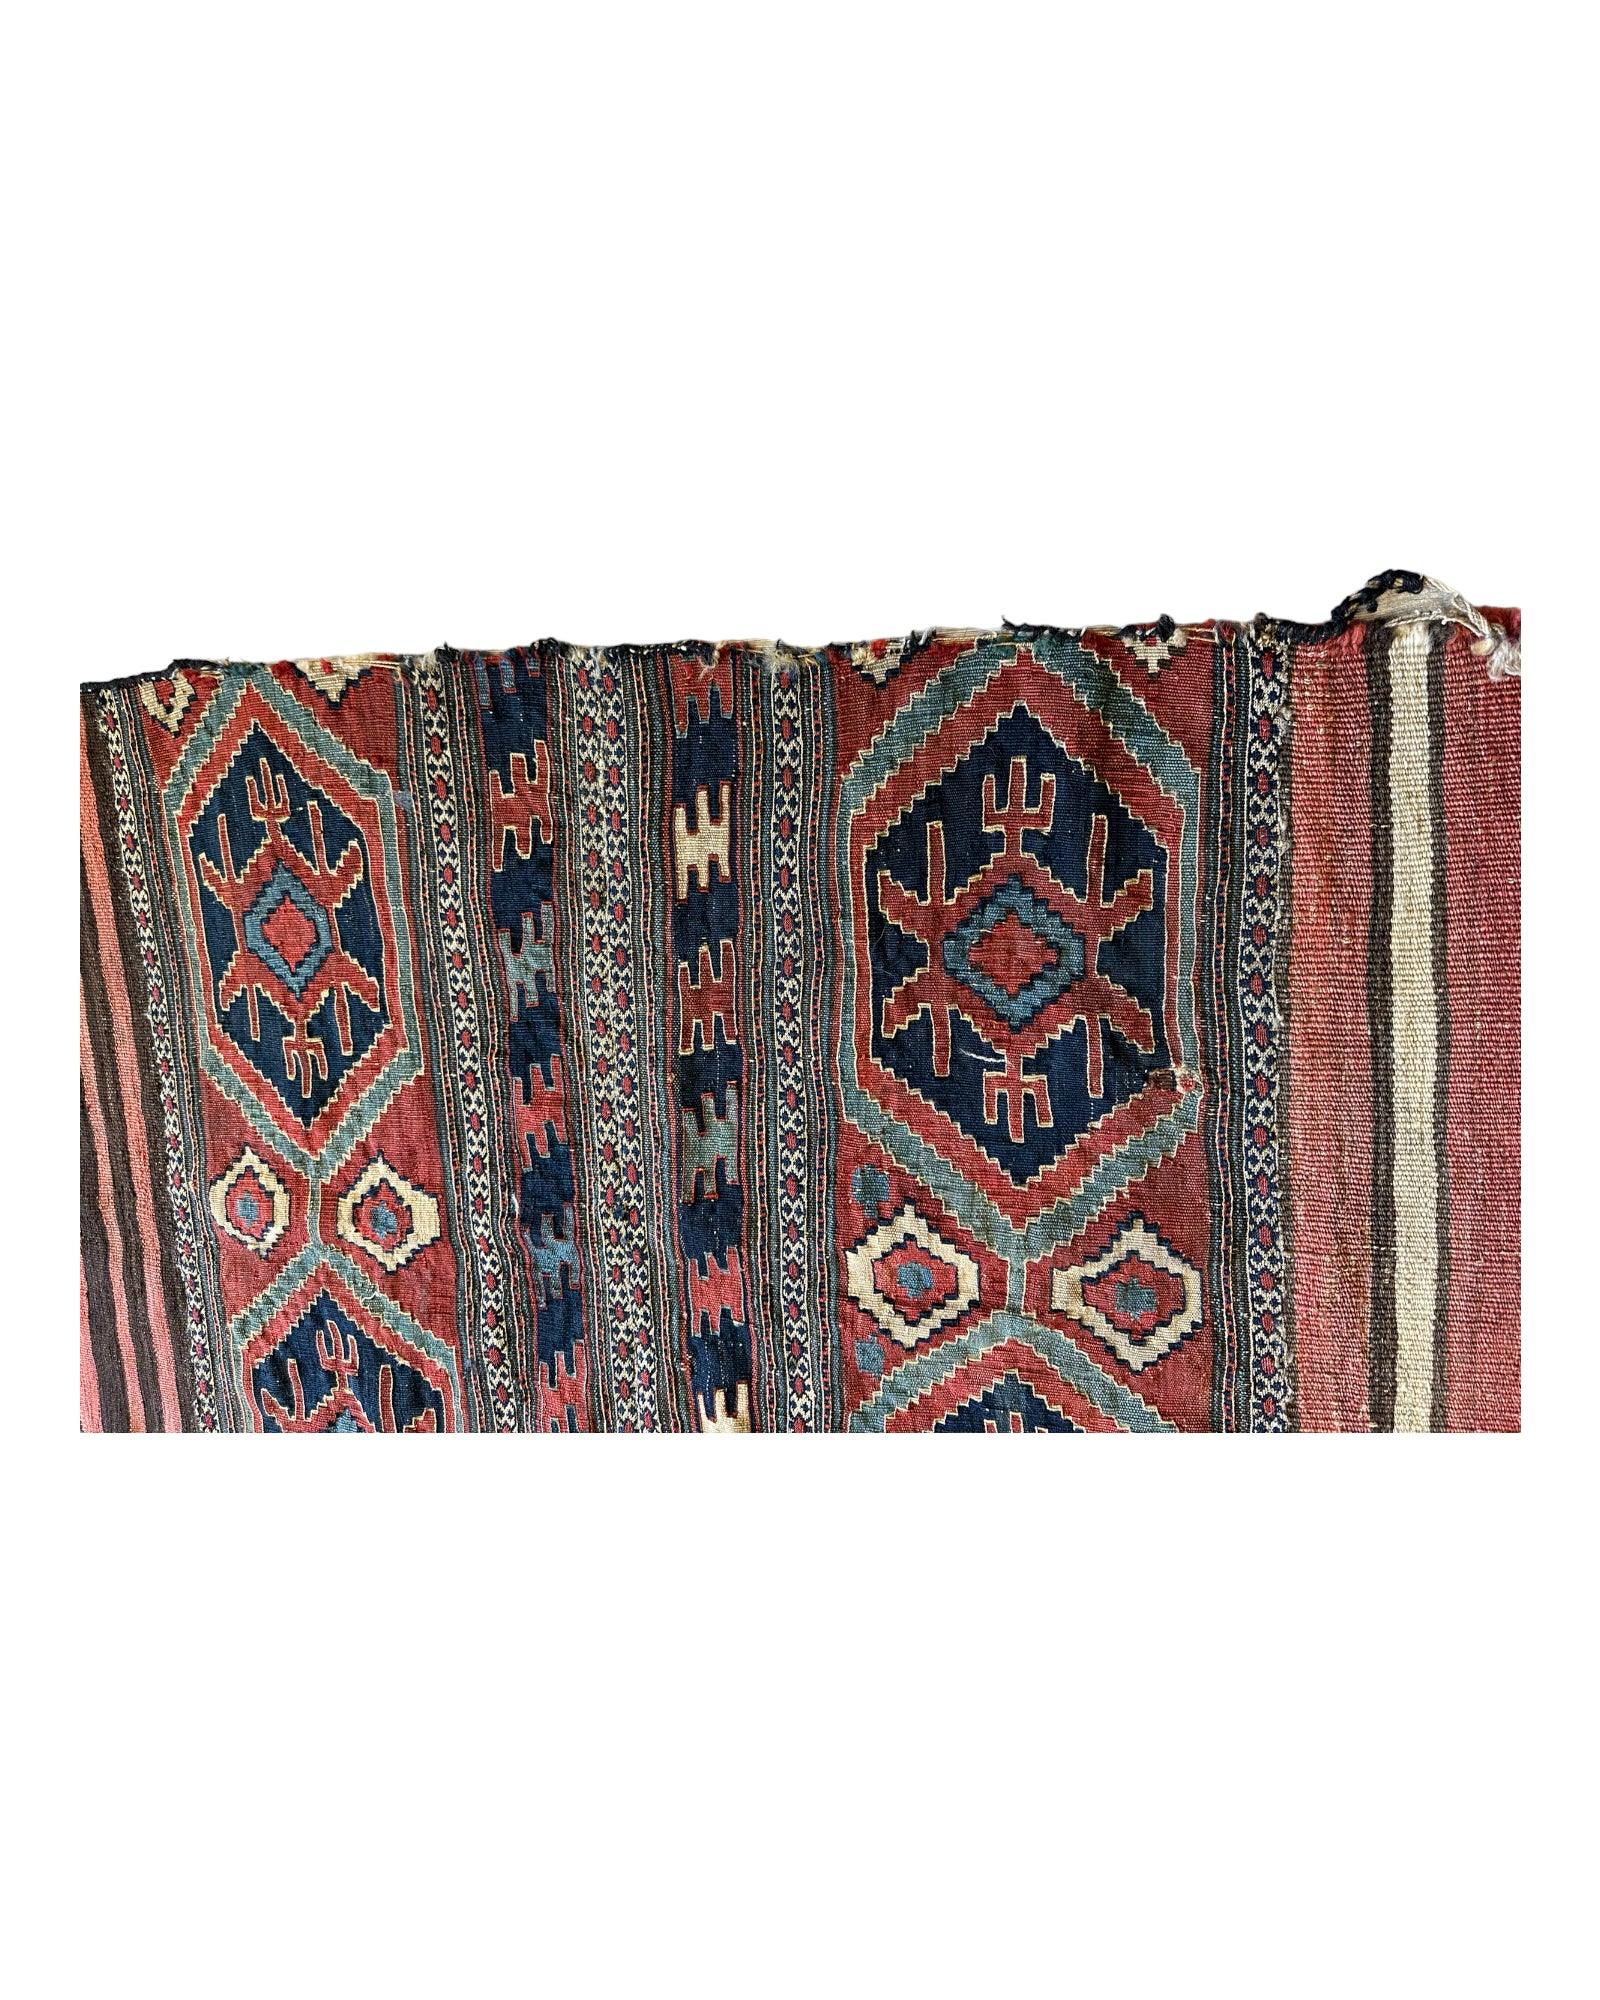 Antique 19th Century Caucasian Shahsavan Mafrash Panel Rug 32” x 36”